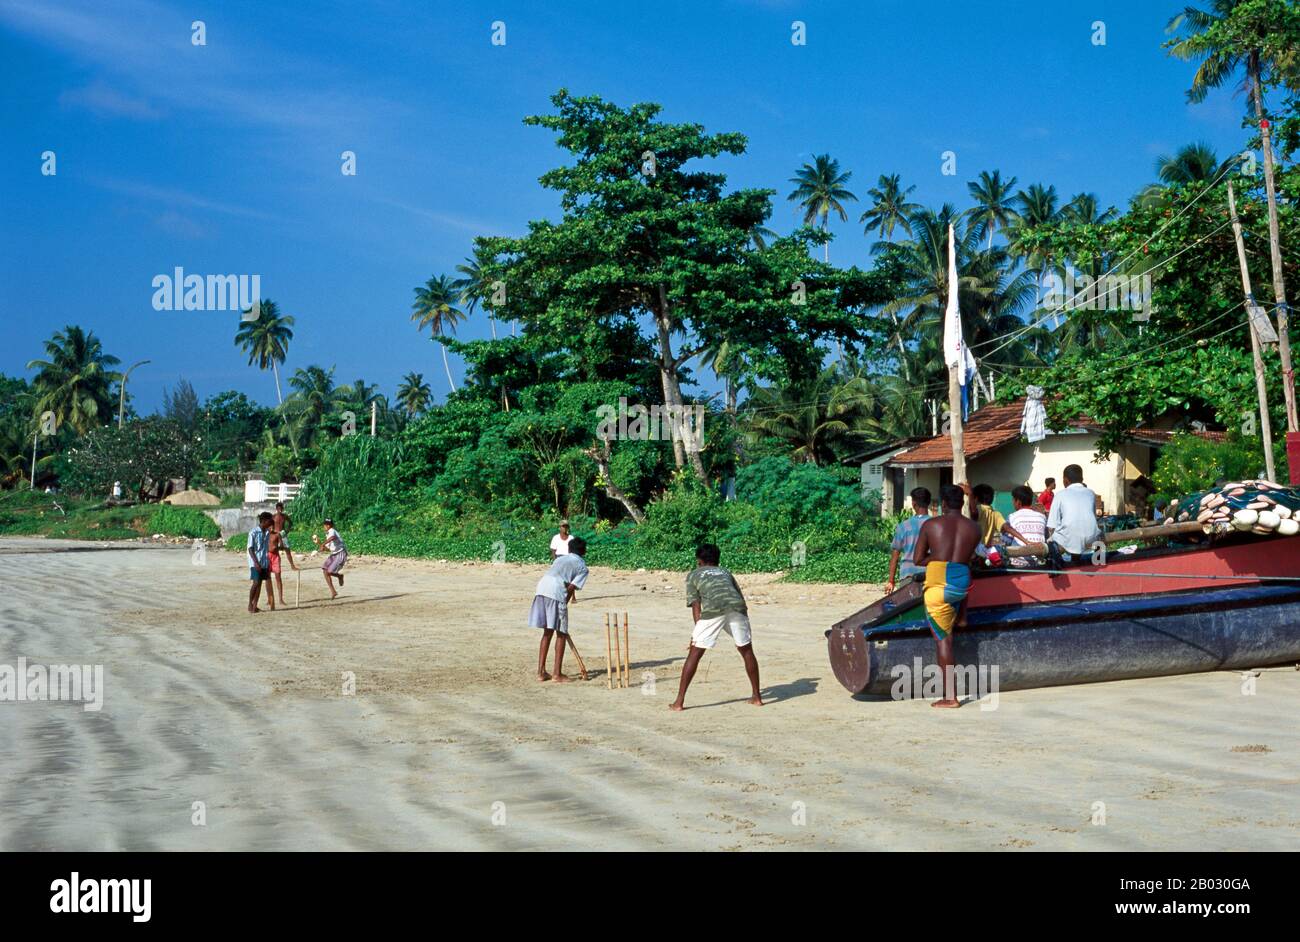 El críquet es el deporte más popular de Sri Lanka. Sri Lanka es una de las diez naciones que toman parte en el test de la prueba de la prueba de la prueba de la prueba de la prueba de la prueba de la prueba de la prueba de la prueba de la prueba de la prueba de la prueba de la prueba de la prueba del El críquet se juega a nivel profesional, semiprofesional y recreativo en el país y una gran proporción de la población observa con interés los partidos internacionales de críquet. El críquet fue traído por primera vez a la isla por los británicos y se cree que fue jugado por primera vez allí alrededor de 1800. Foto de stock